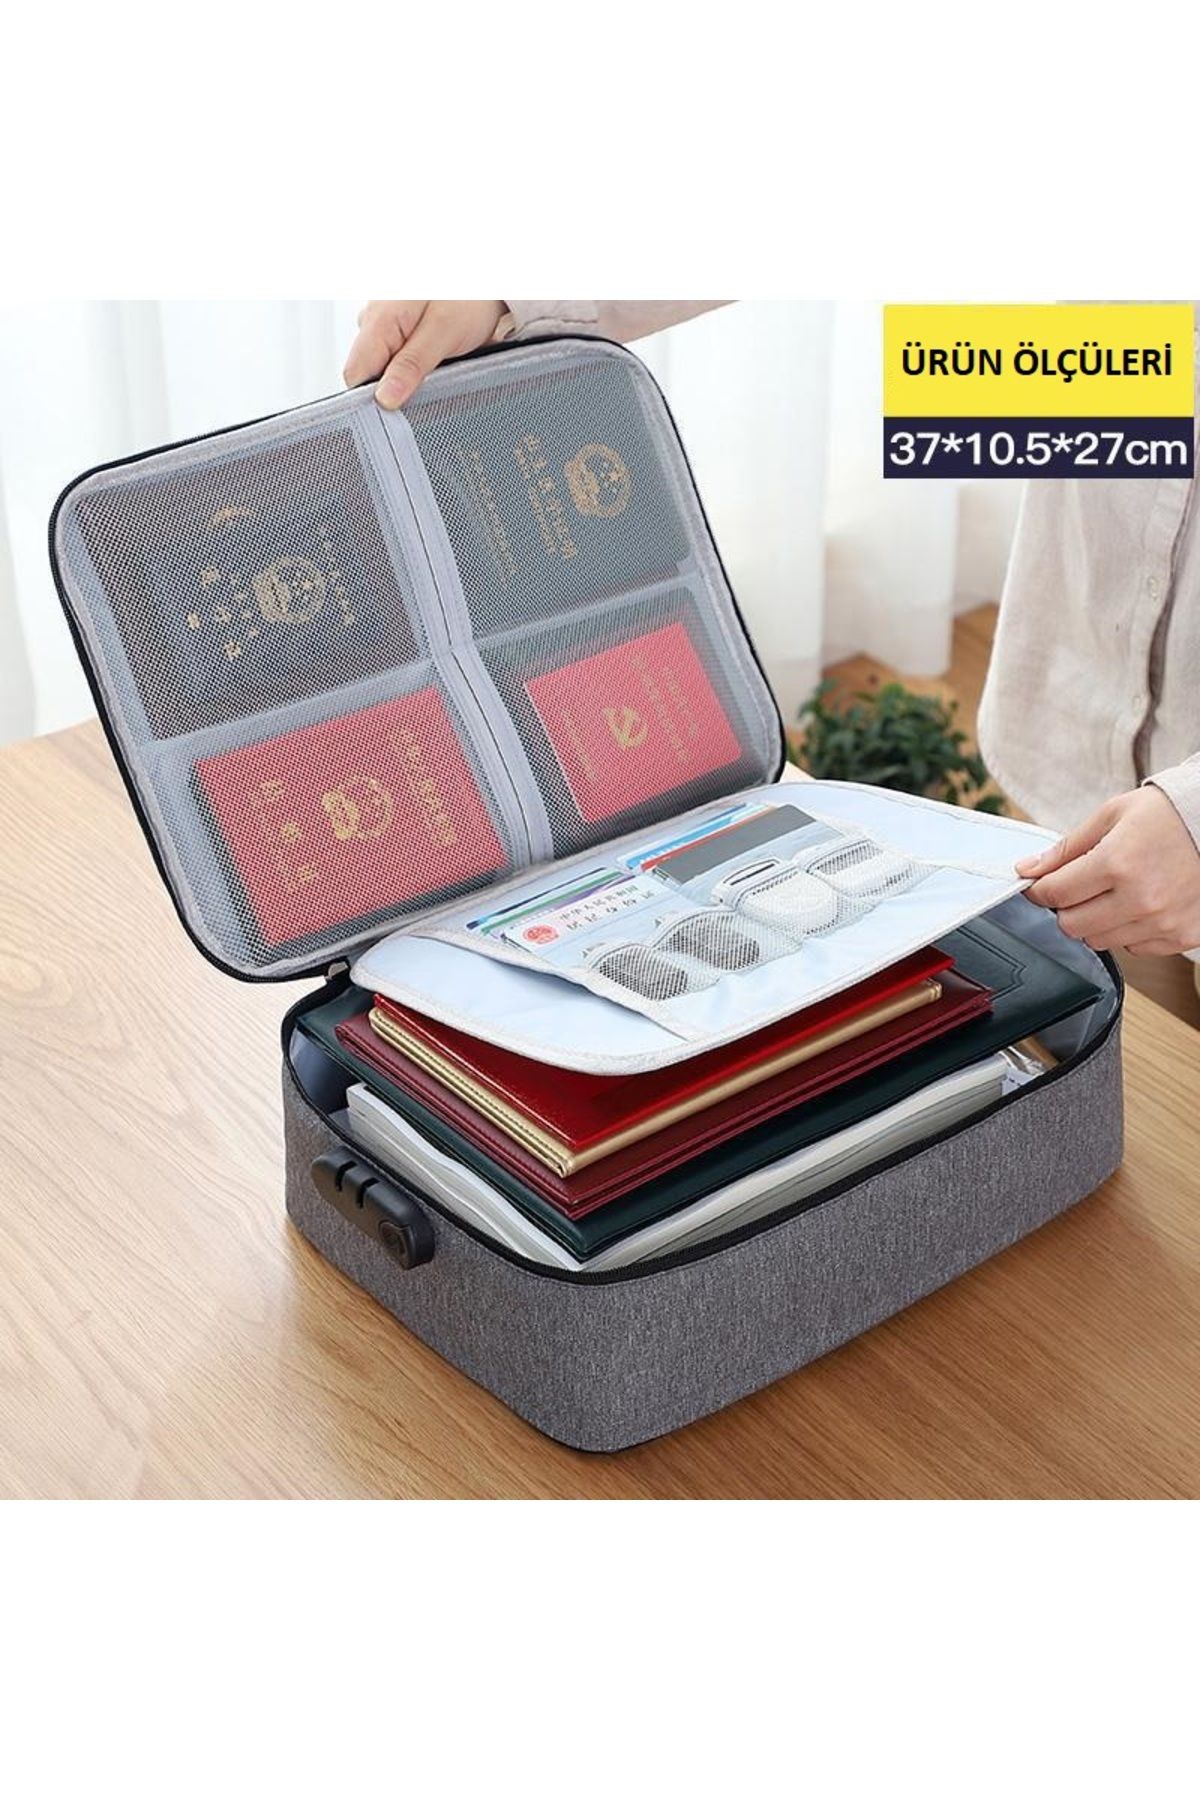 DEKOHOP Belge Evrak Pasaport Saklama Düzenleyici Çanta Kilitli Seyahat Organizer Çantası